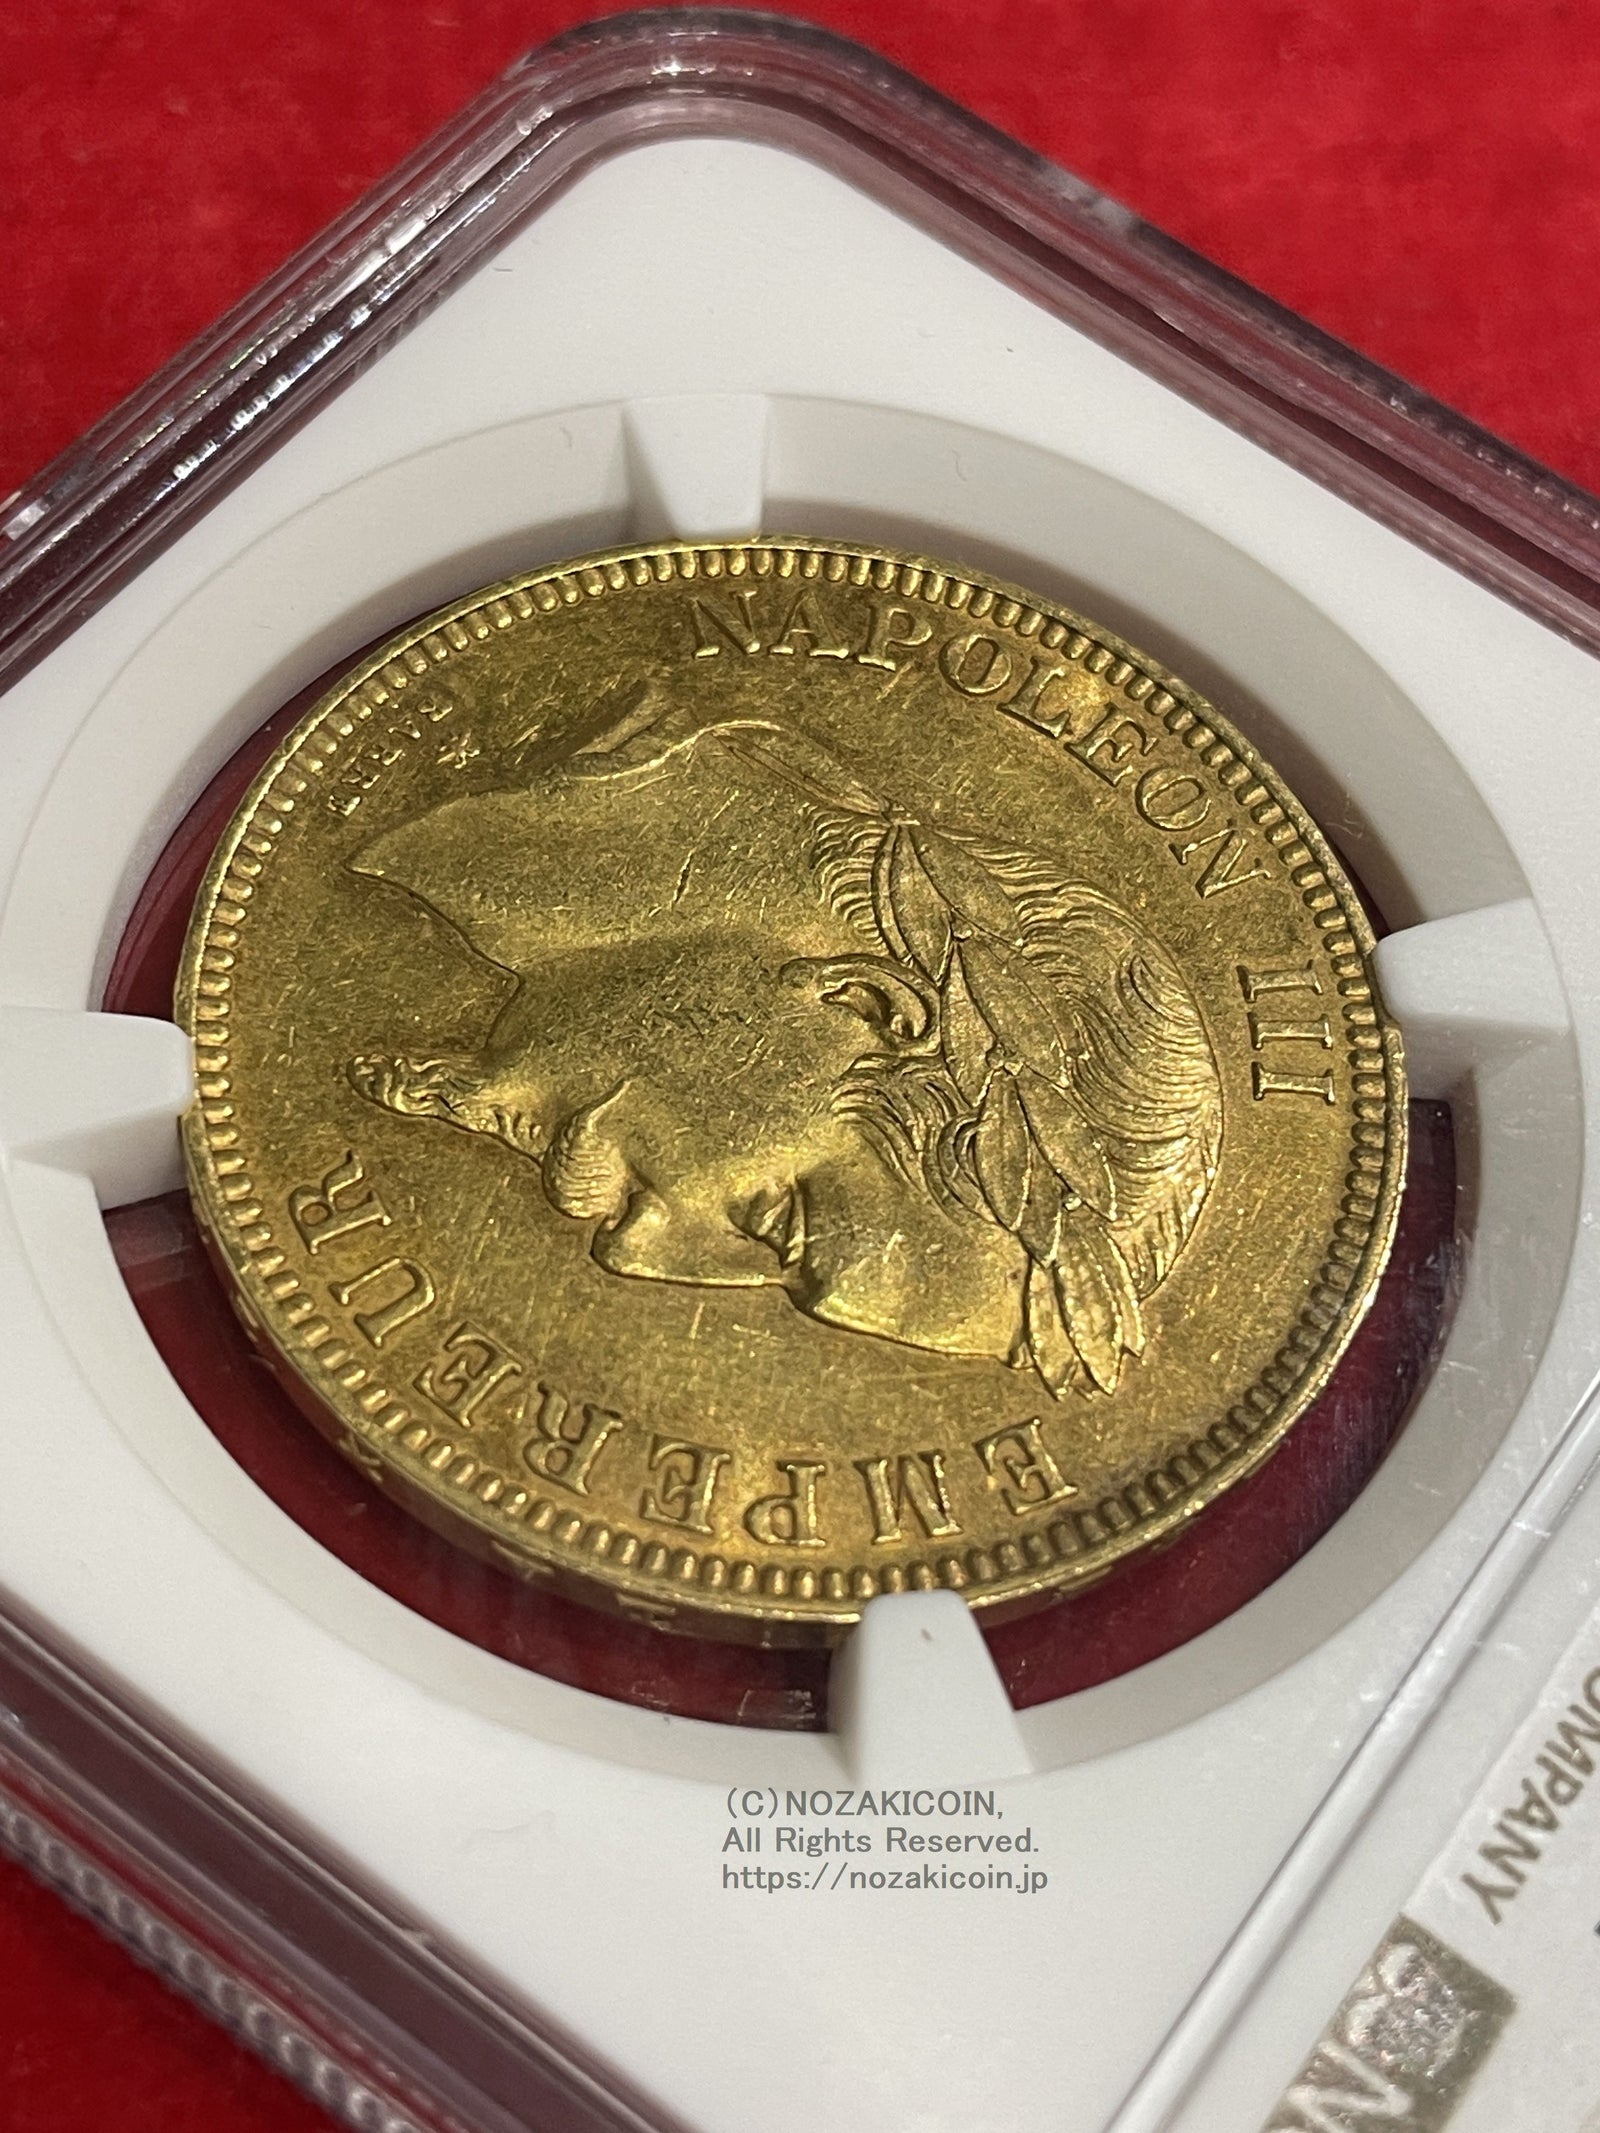 フランス ナポレオン 100フラン金貨 有冠 1869A NGC AU58 – 野崎コイン